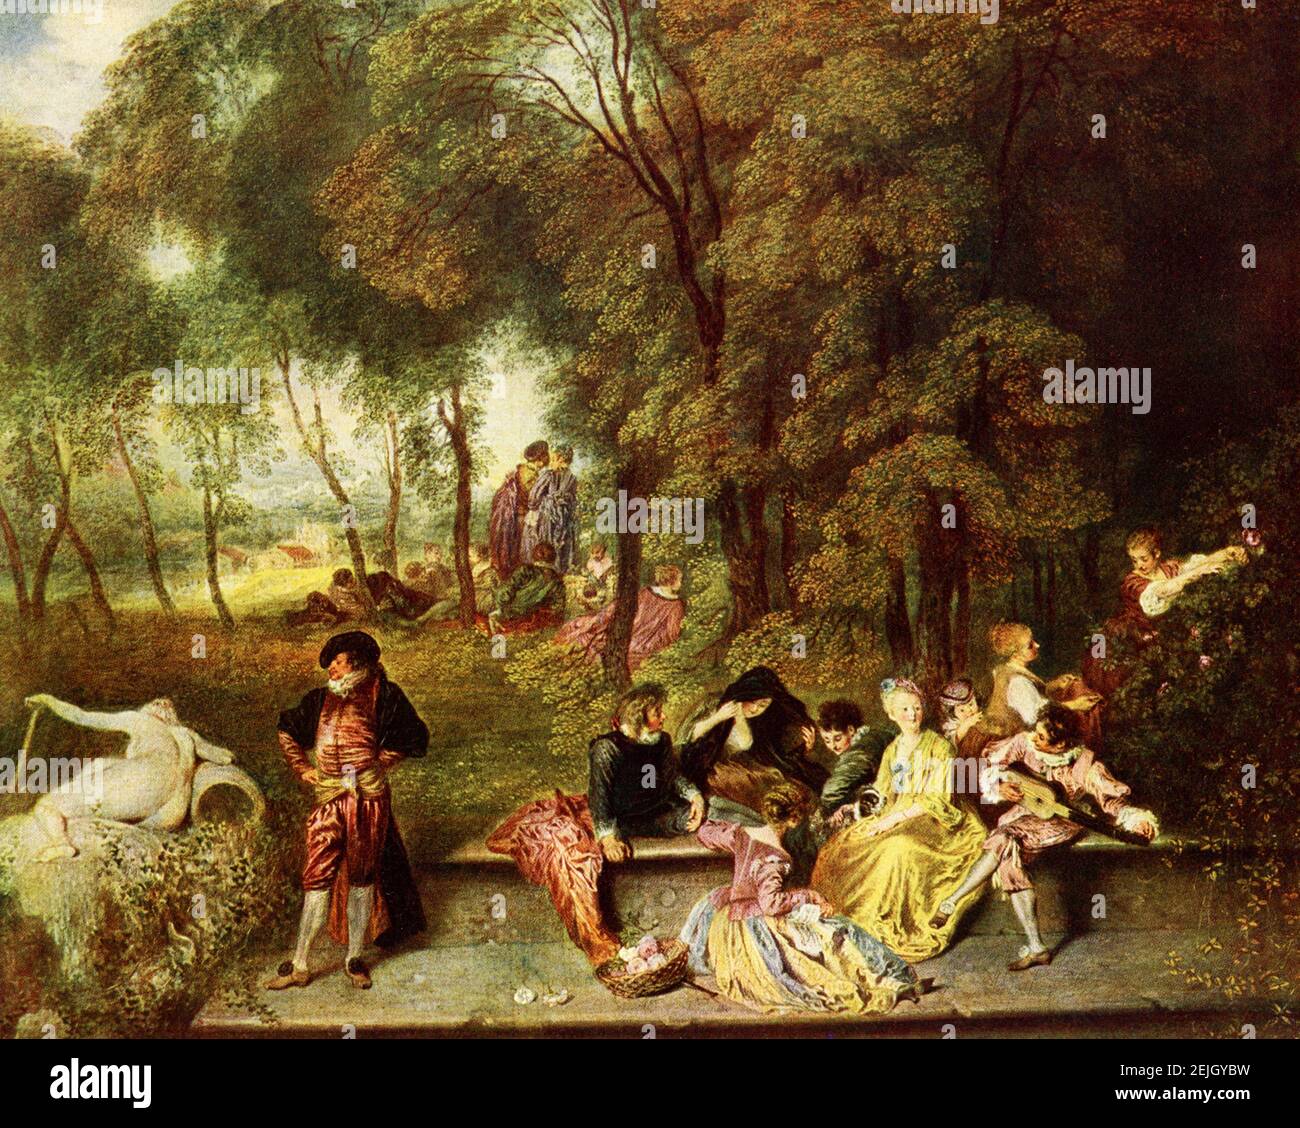 Cette image montre Die Unterhaltung im Freien (rencontre en plein air) par Antoine Watteau, installé dans la Galerie d'Etat de Dresde, en Allemagne. La peinture date de 1719. Jean-Antoine Watteau (1684-1721) est un peintre et dessinateur français dont la brève carrière a stimulé le renouveau de l'intérêt pour la couleur et le mouvement, comme le montre la tradition de Correggio et Rubens. Il a revitalisé le style baroque en déclin, le faisant passer au rococo, moins sévère, plus naturaliste, moins classique. Banque D'Images